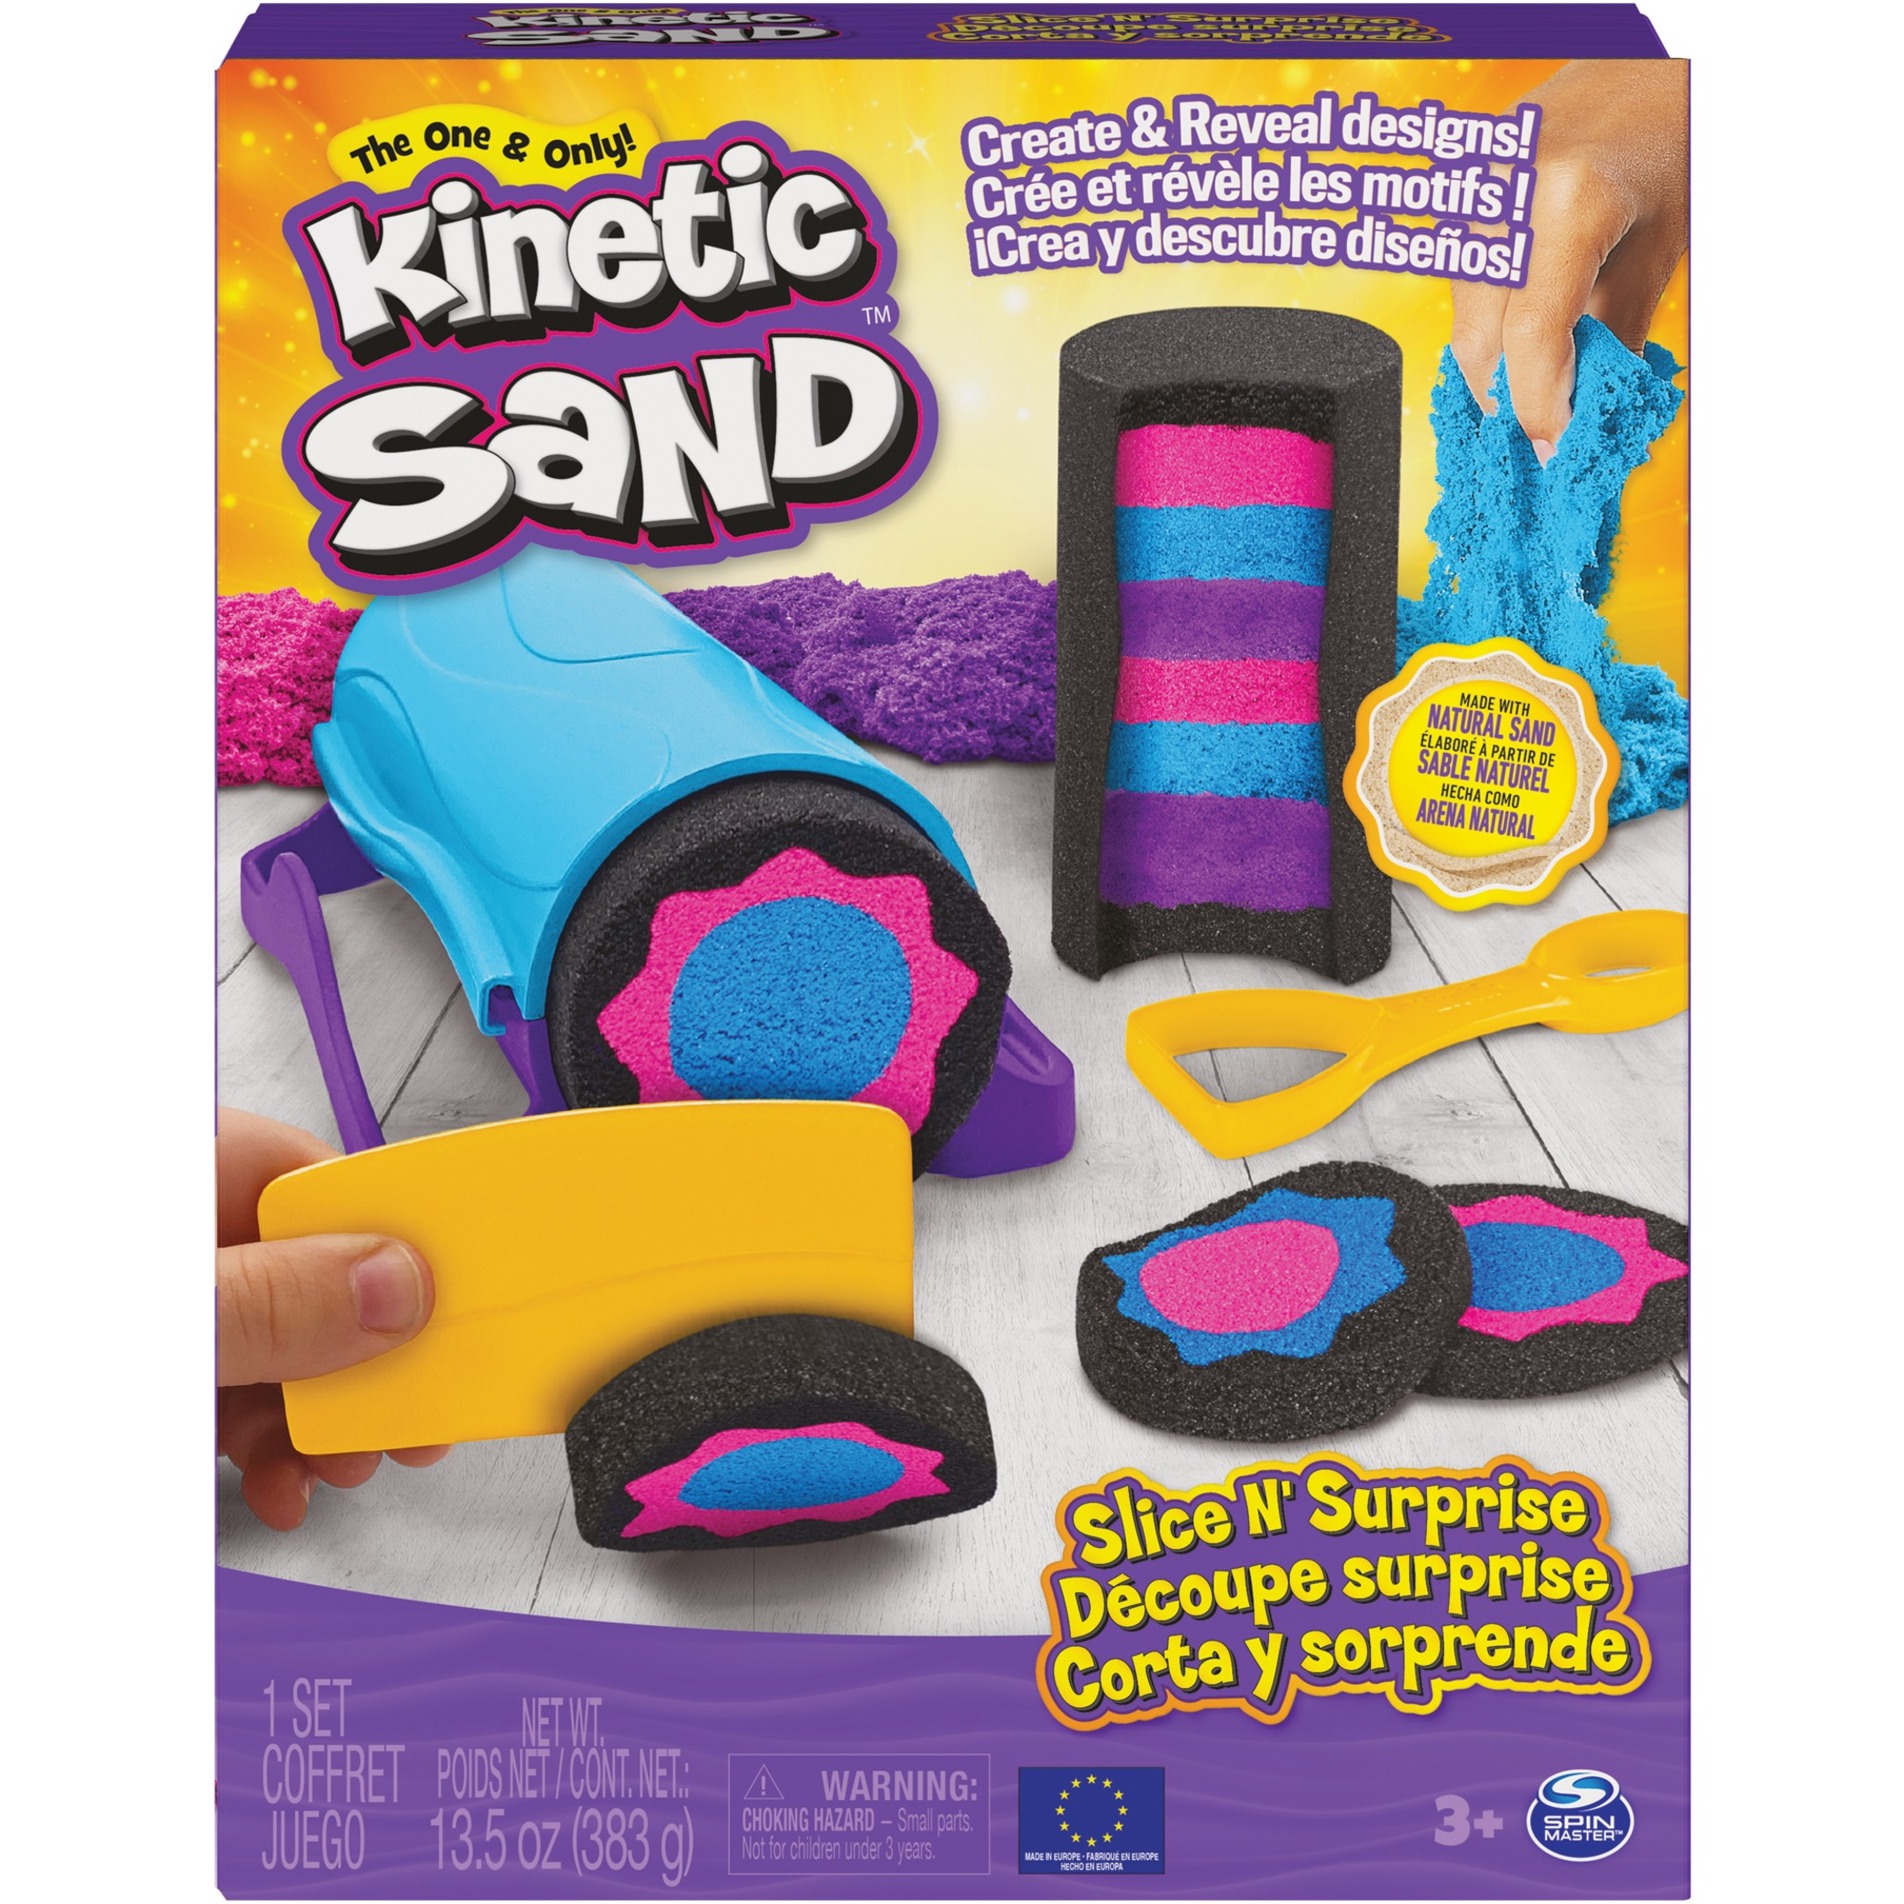 Image of Alternate - Kinetic Sand - Slice N''Surprise Set, Spielsand online einkaufen bei Alternate